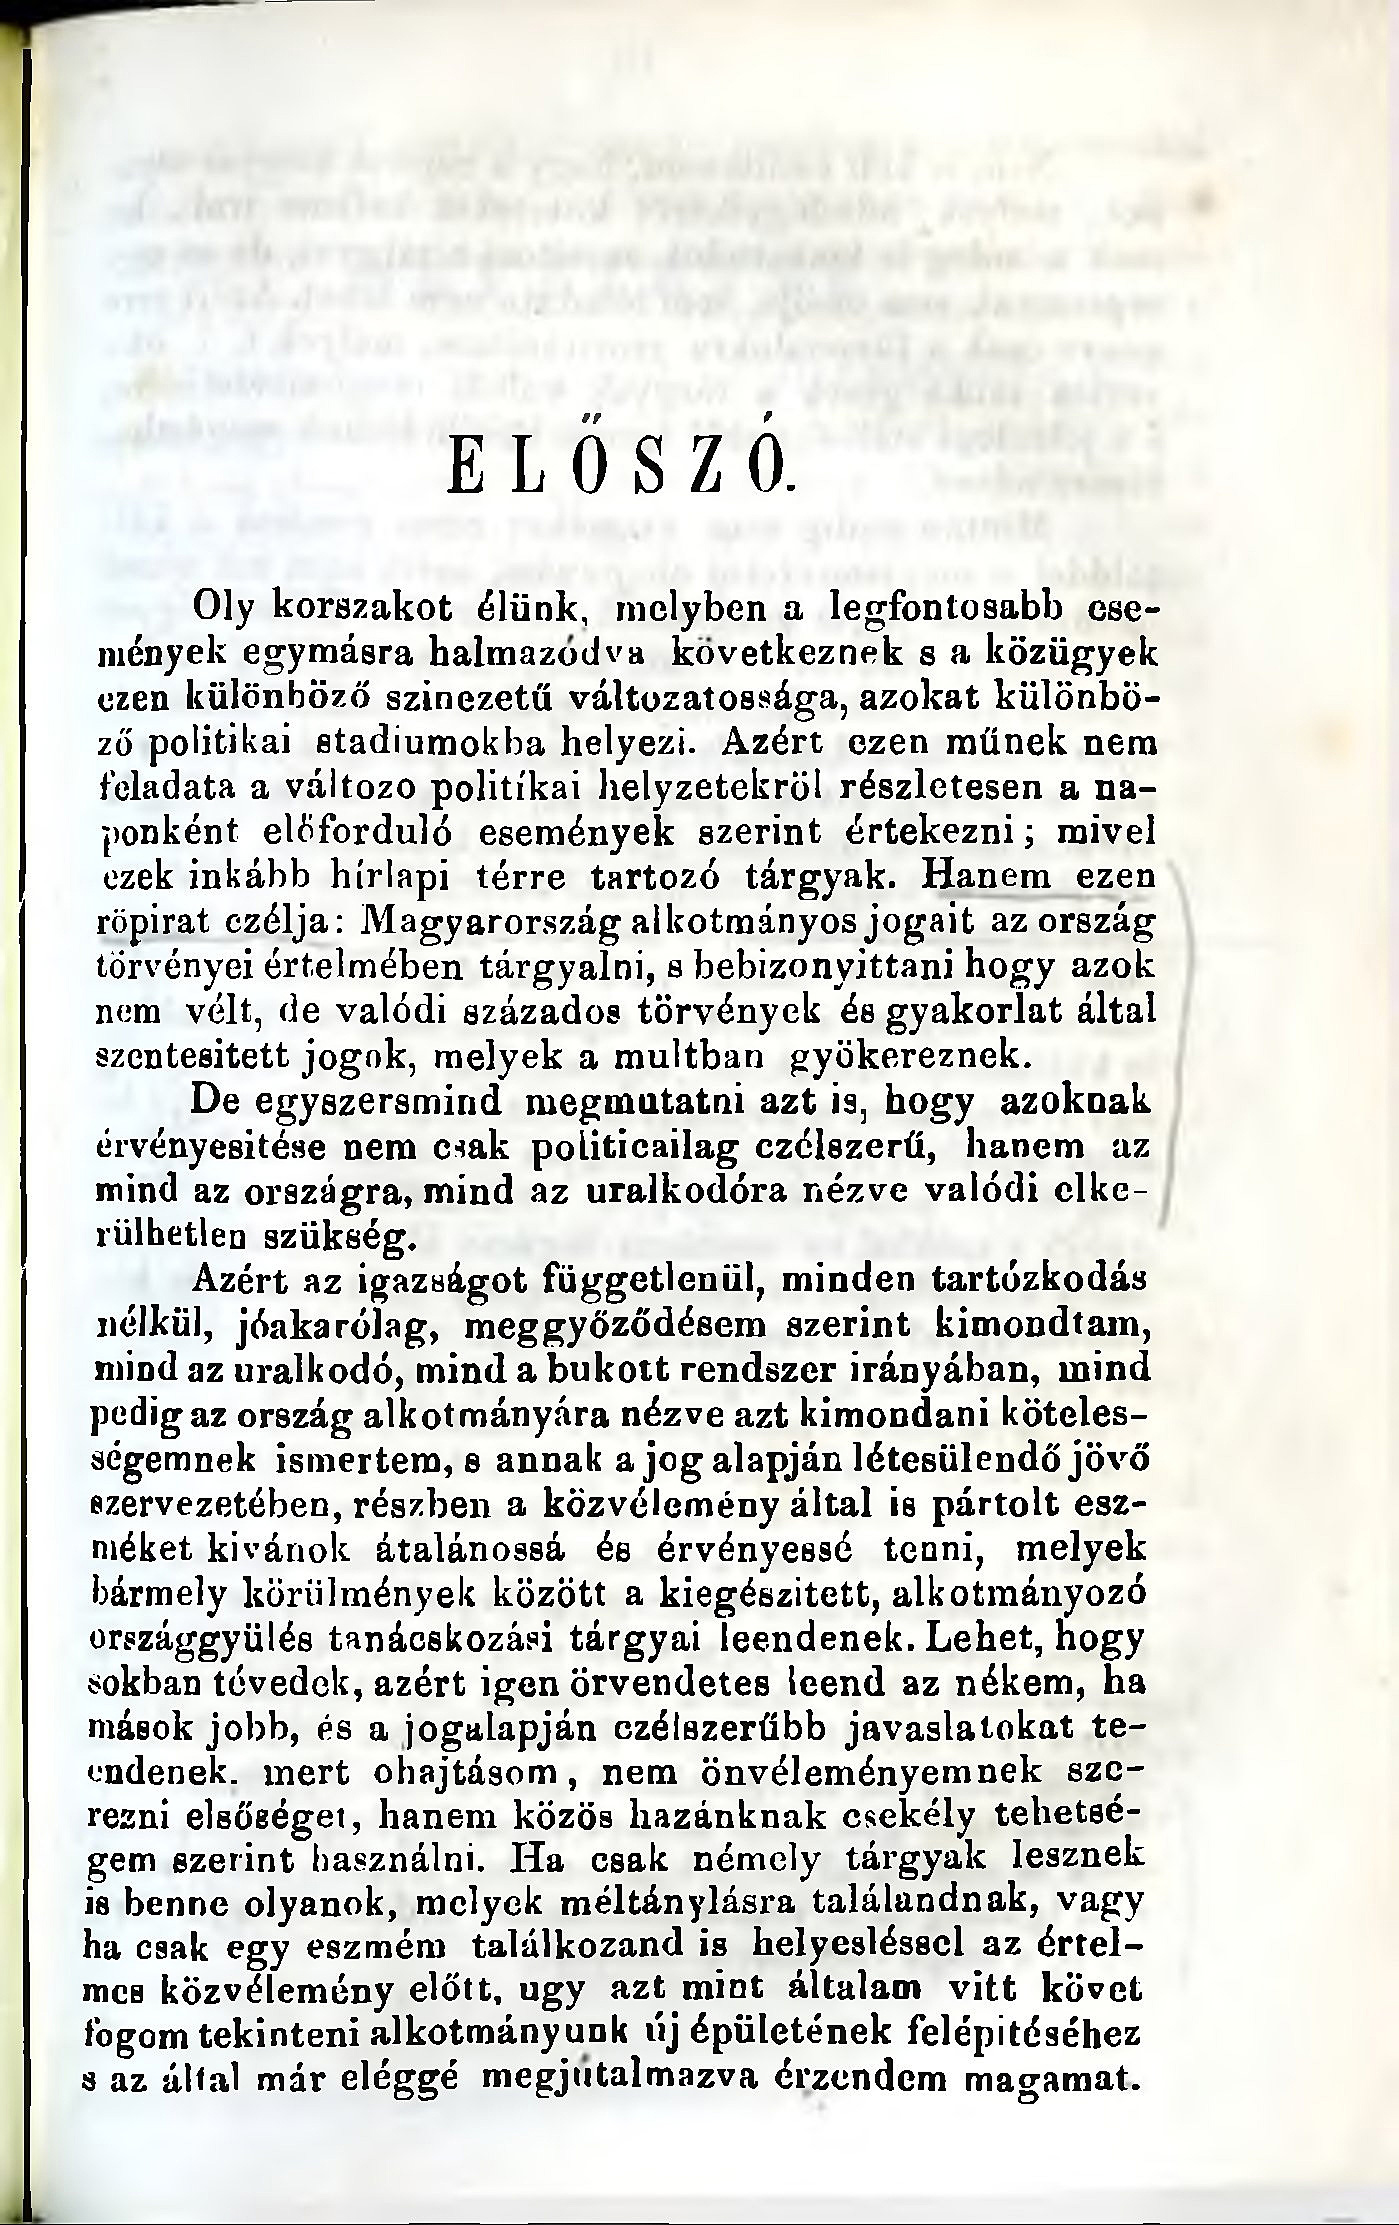 Sztrókay Béla gyóni földbirtokos „Magyarhoni korszerű eszmék” című kötete